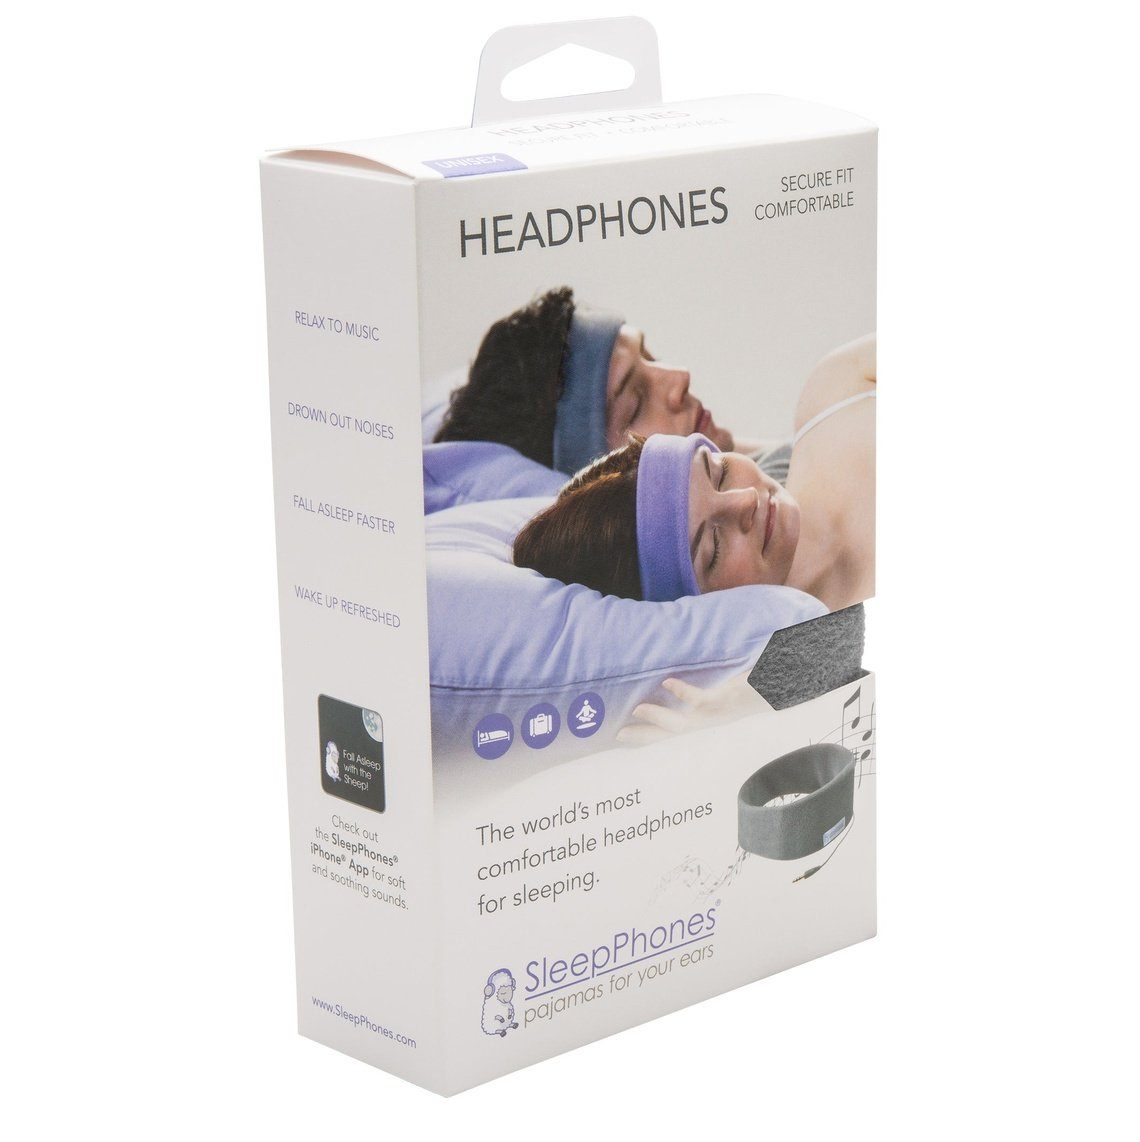 SleepPhones® Classic v6 Breeze Nighttide Navy/Navyblauw - Small/Extra Small